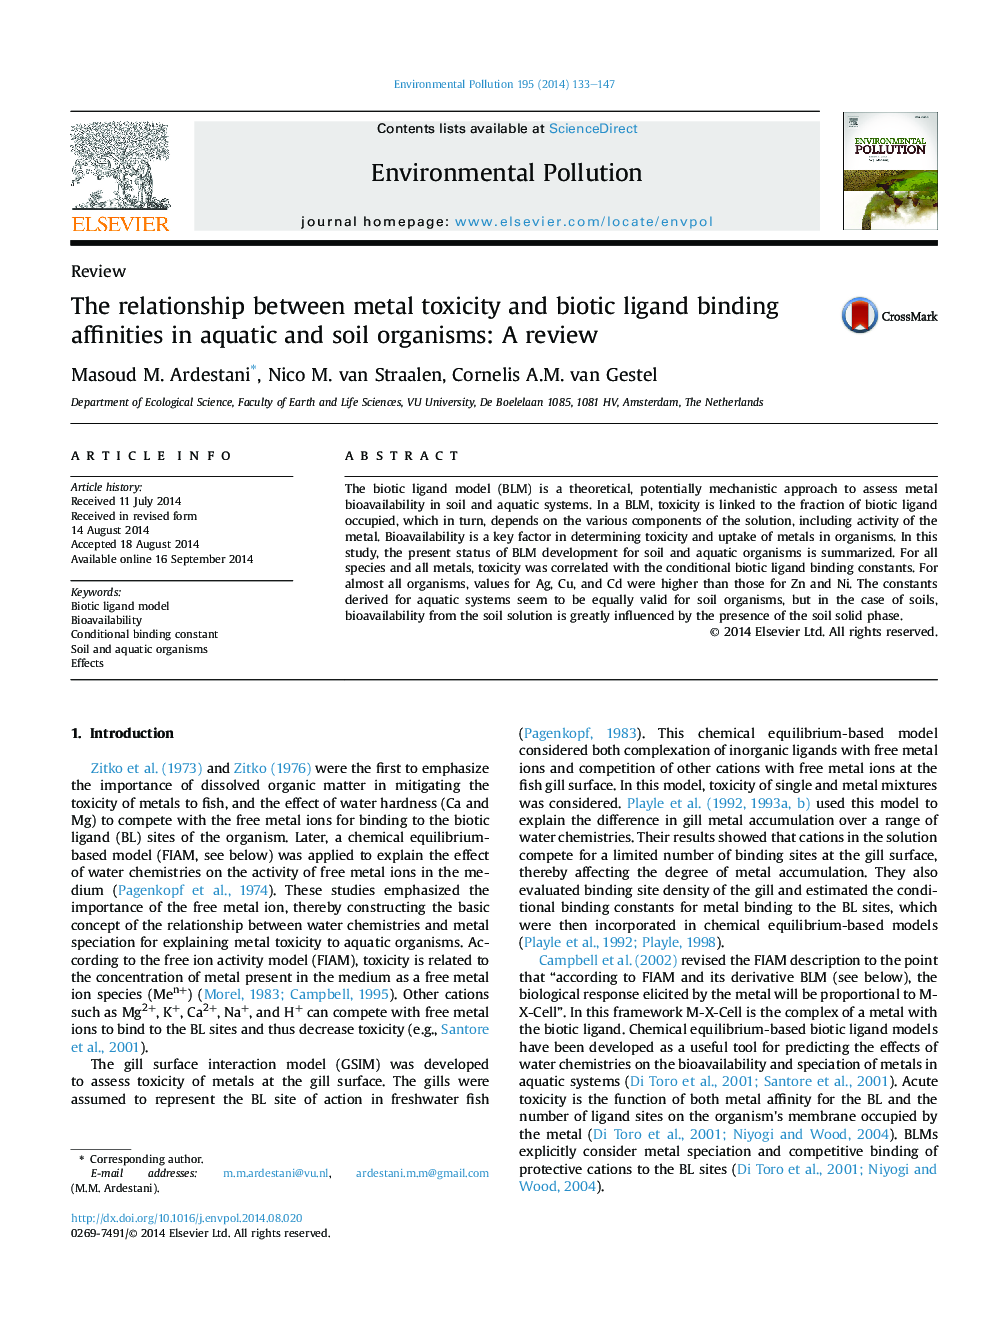 رابطه بین سمیت فلزی و وابستگی های لیگاند زیستی در موجودات آبزی و خاک: بررسی 